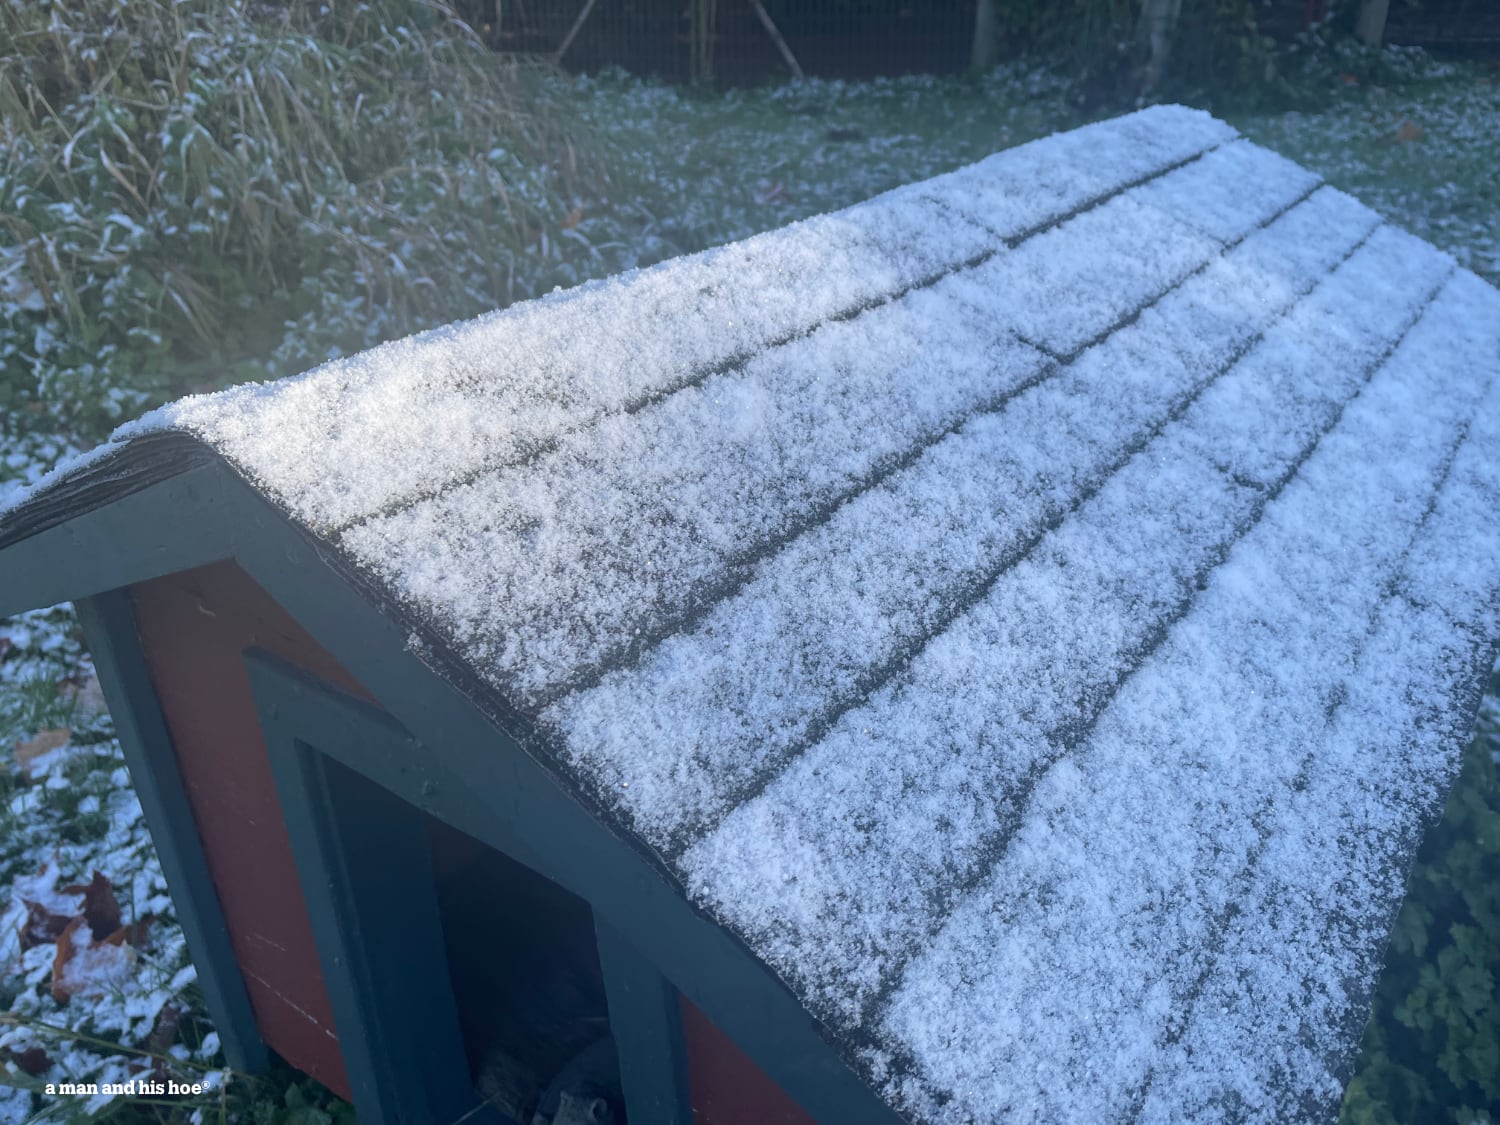 Snow on dog house